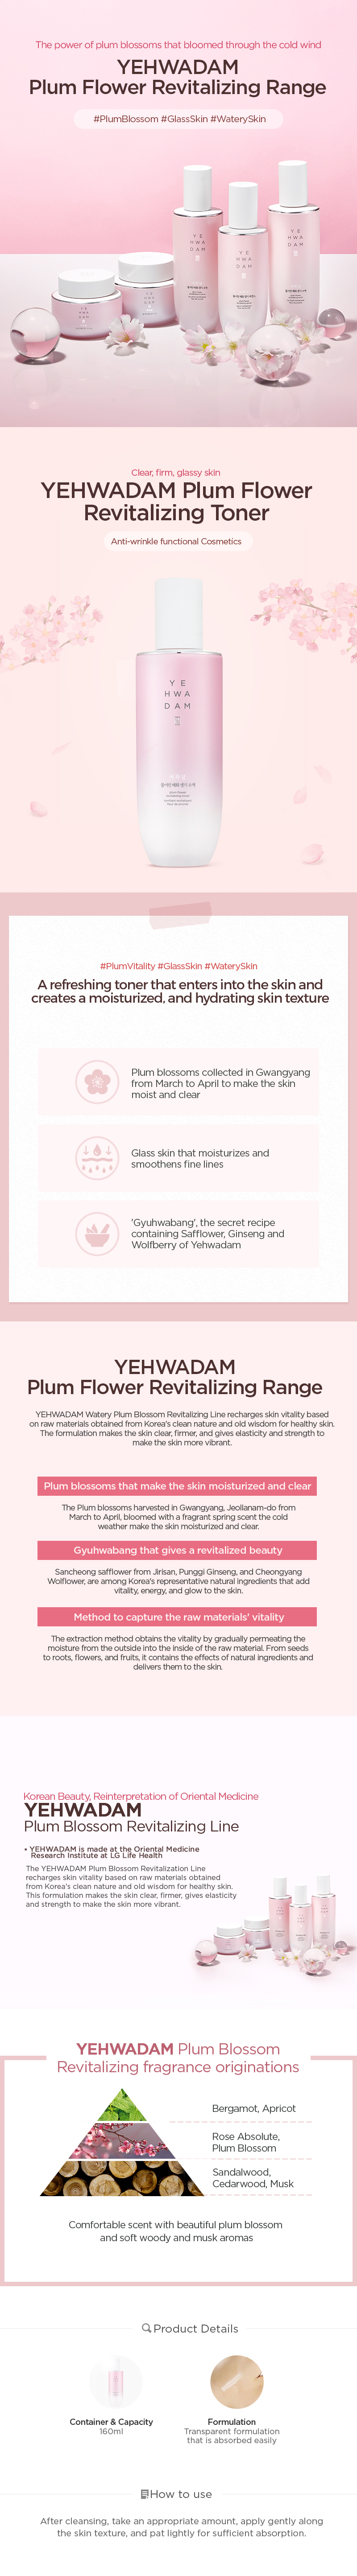 Yehwadam Plum Flower Revitalizing Toner